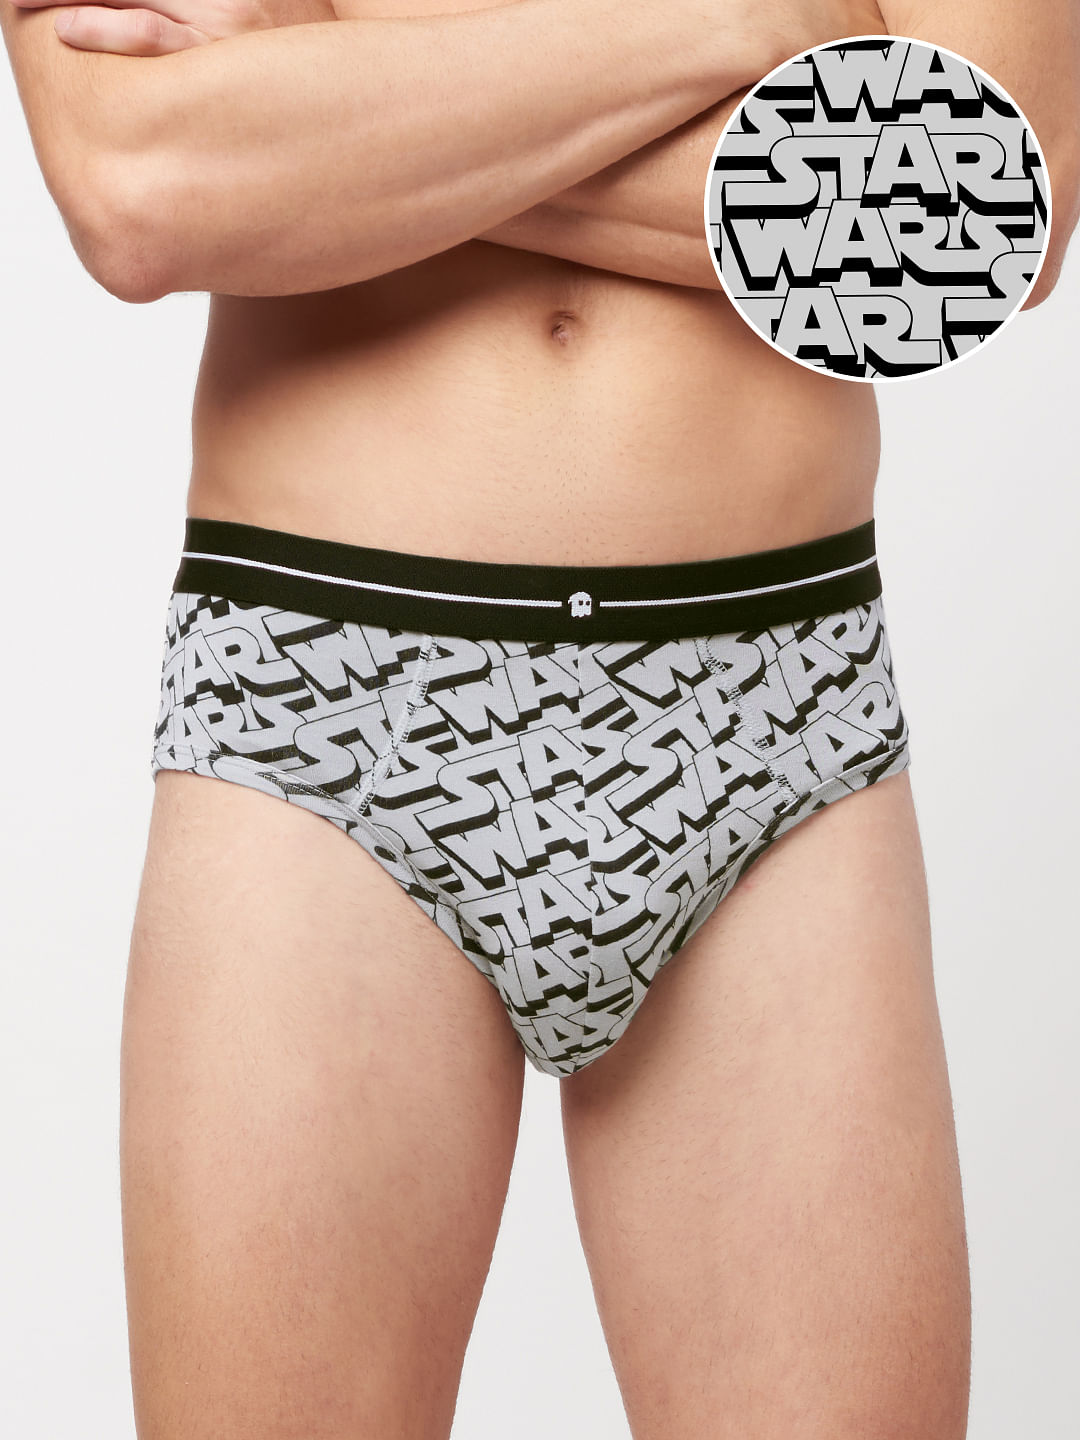 Buy Star Wars Typography Briefs Underwear Online